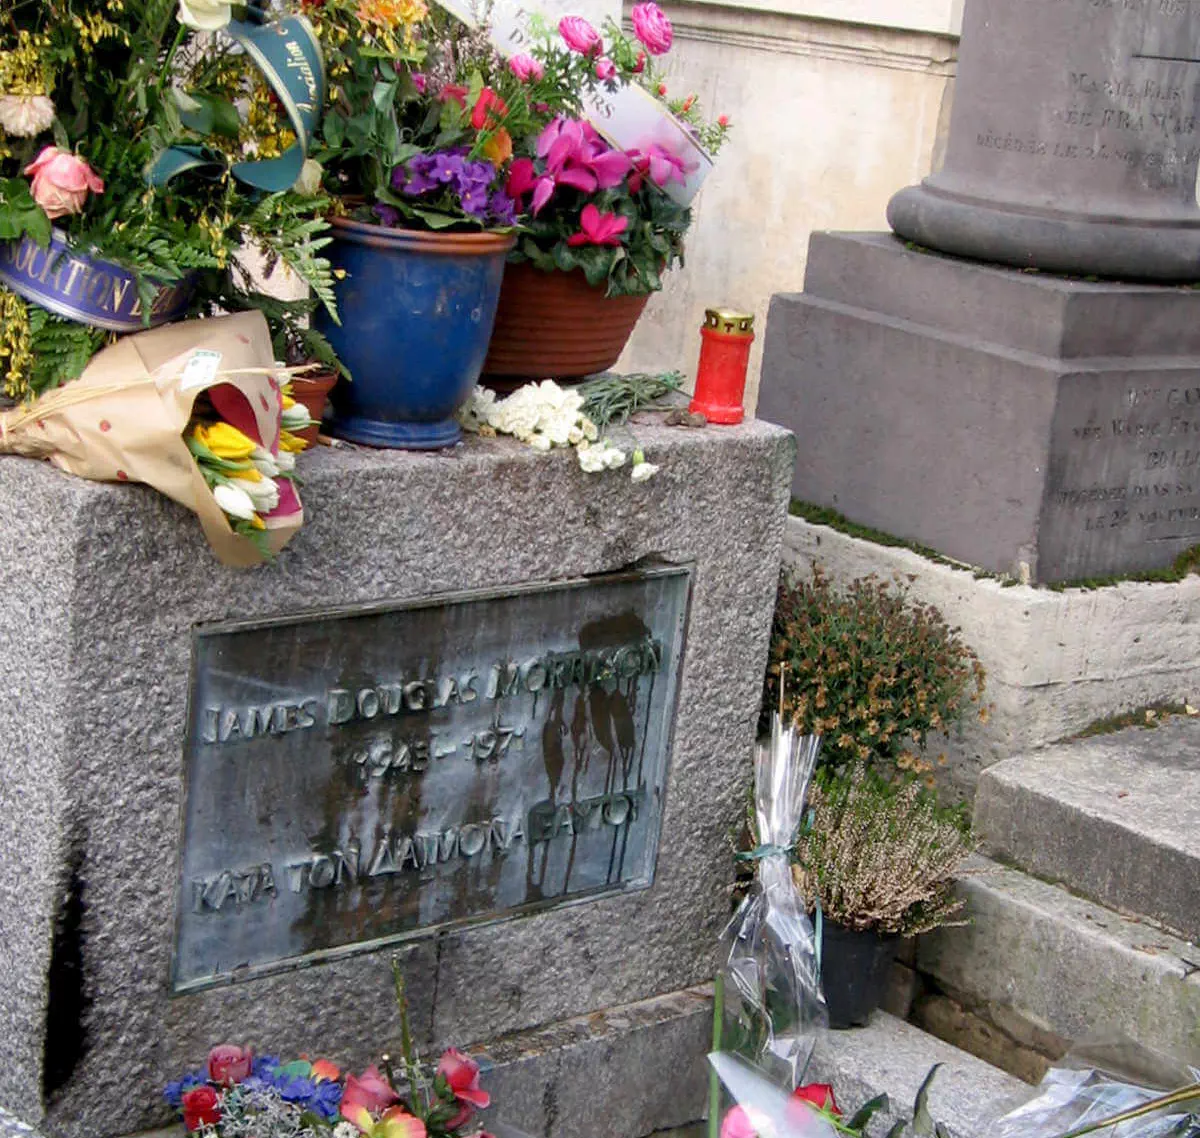 Rock legend Jim Morrison's grave is probably the most popular tomb in Paris' Père Lachaise Cemetery